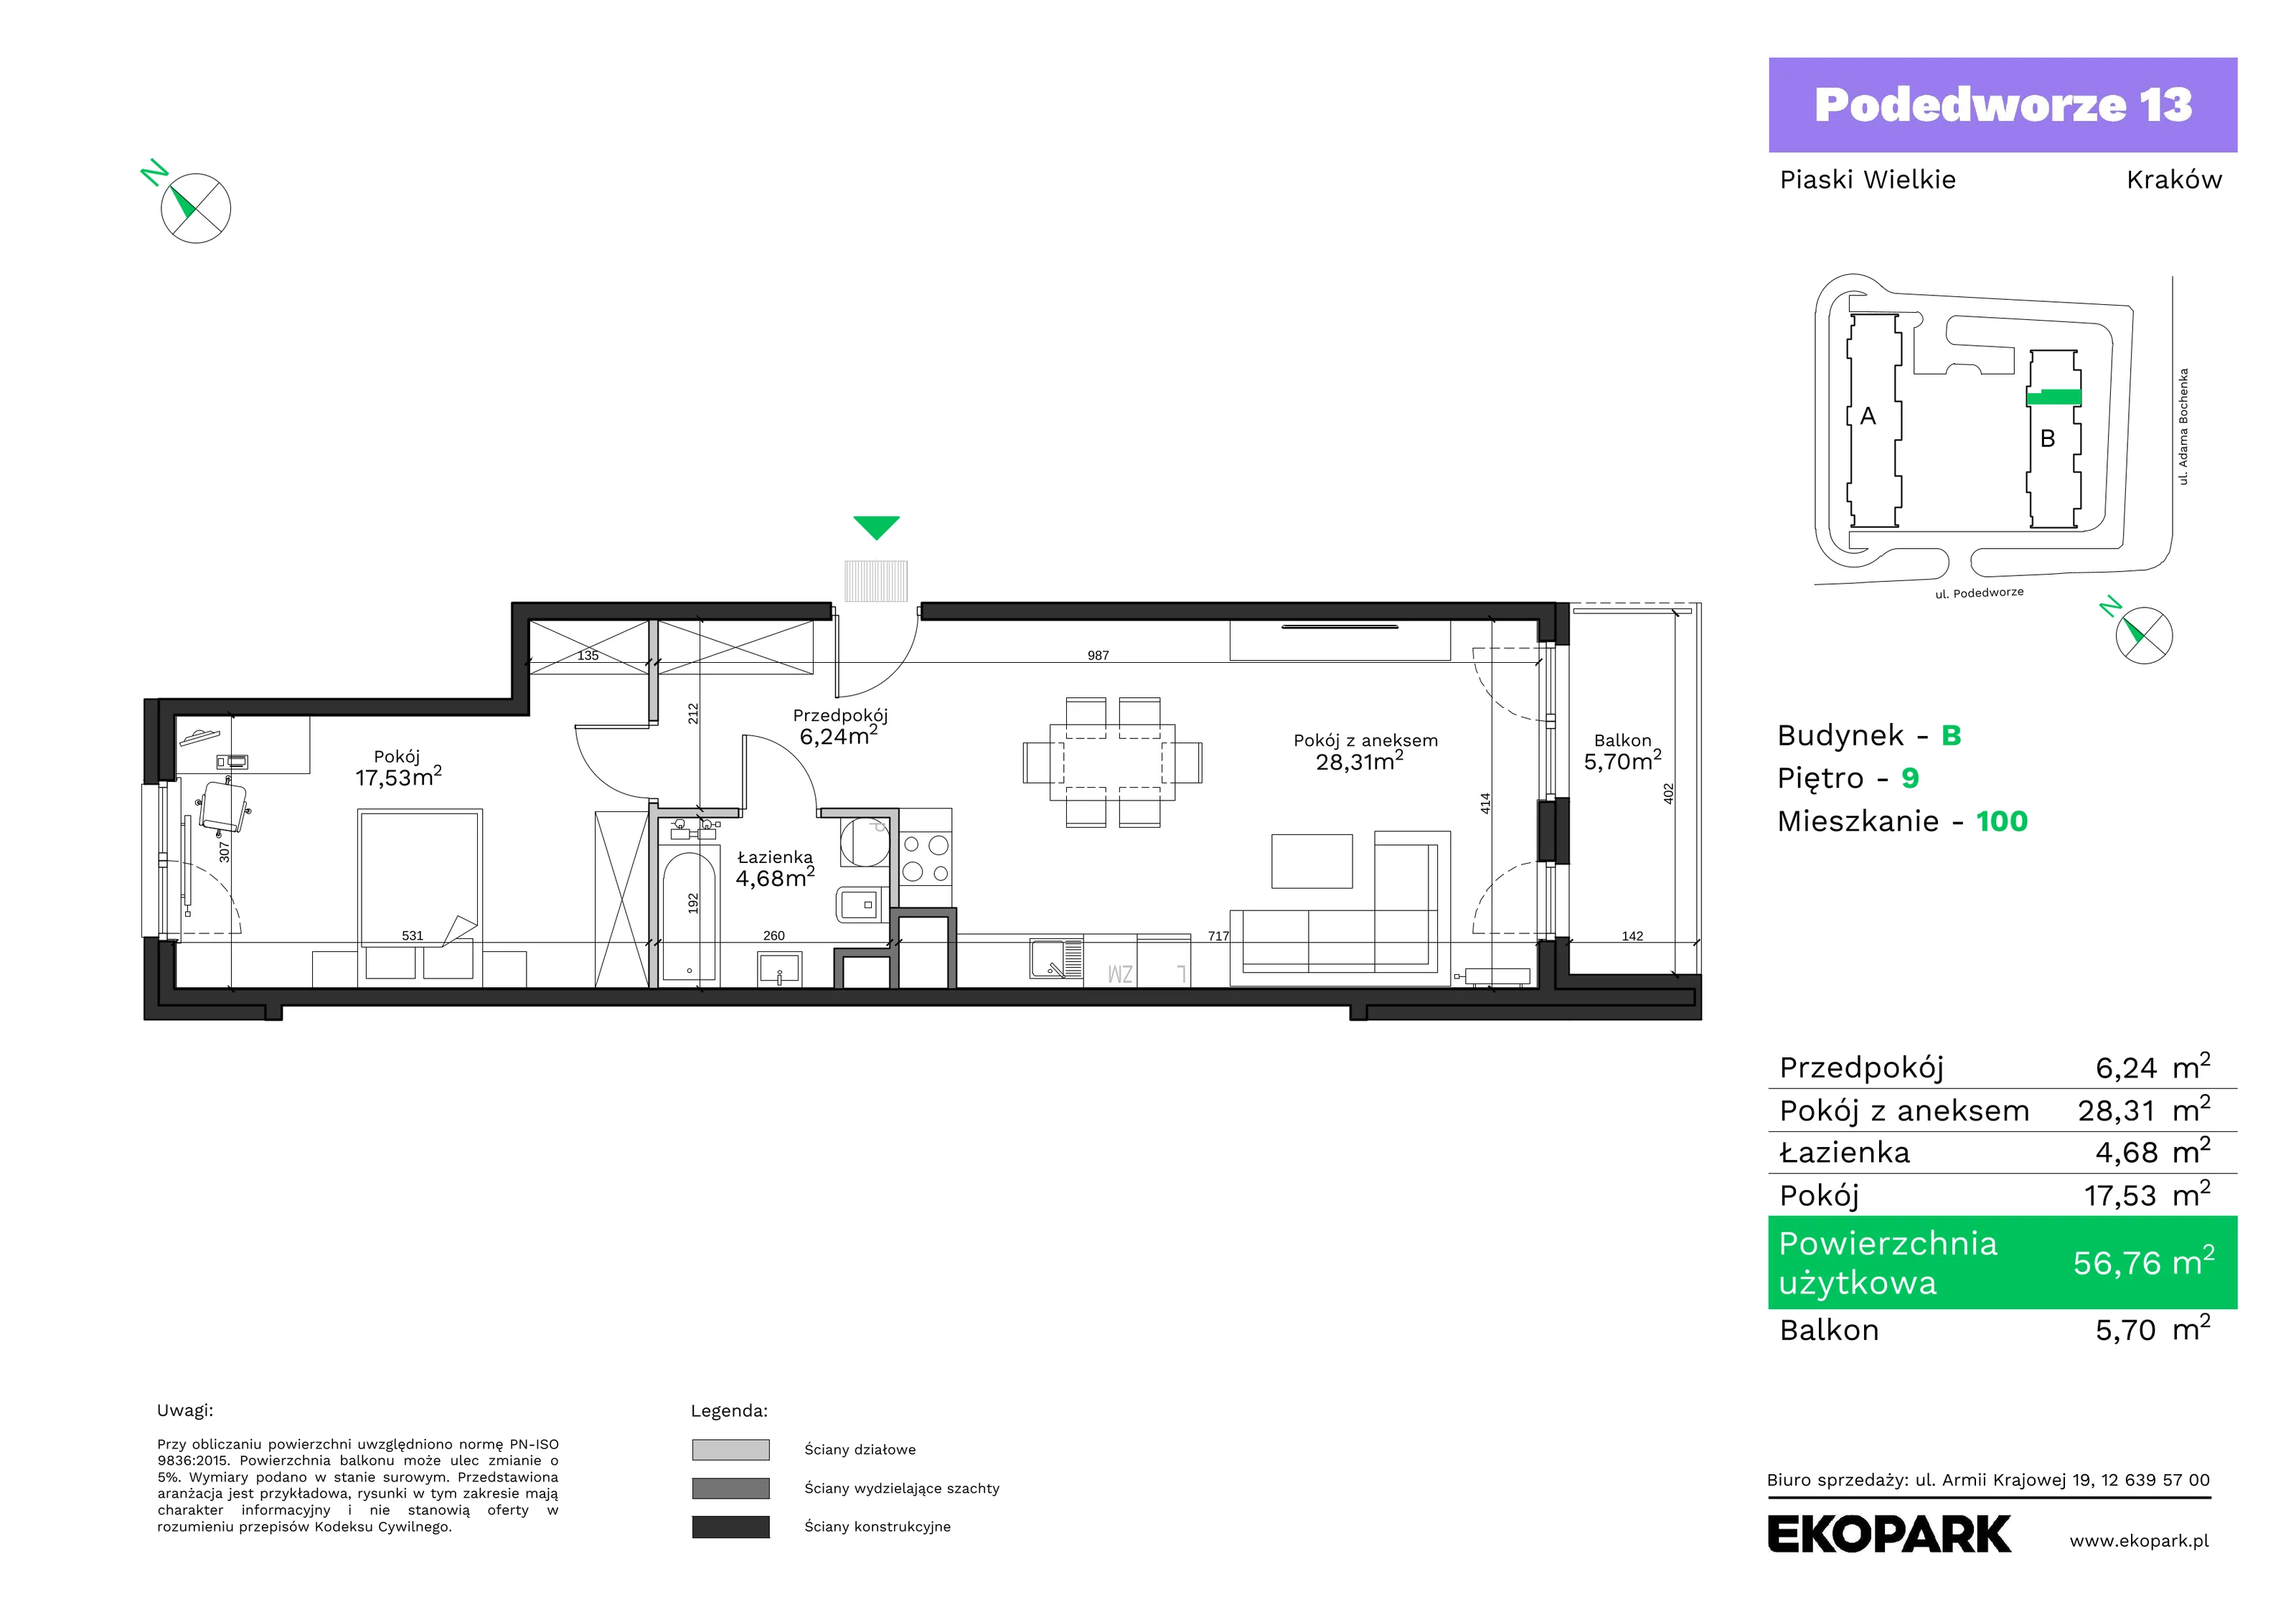 Mieszkanie 56,76 m², piętro 9, oferta nr B100, Podedworze 13, Kraków, Podgórze Duchackie, Piaski Wielkie, ul. Podedworze 13